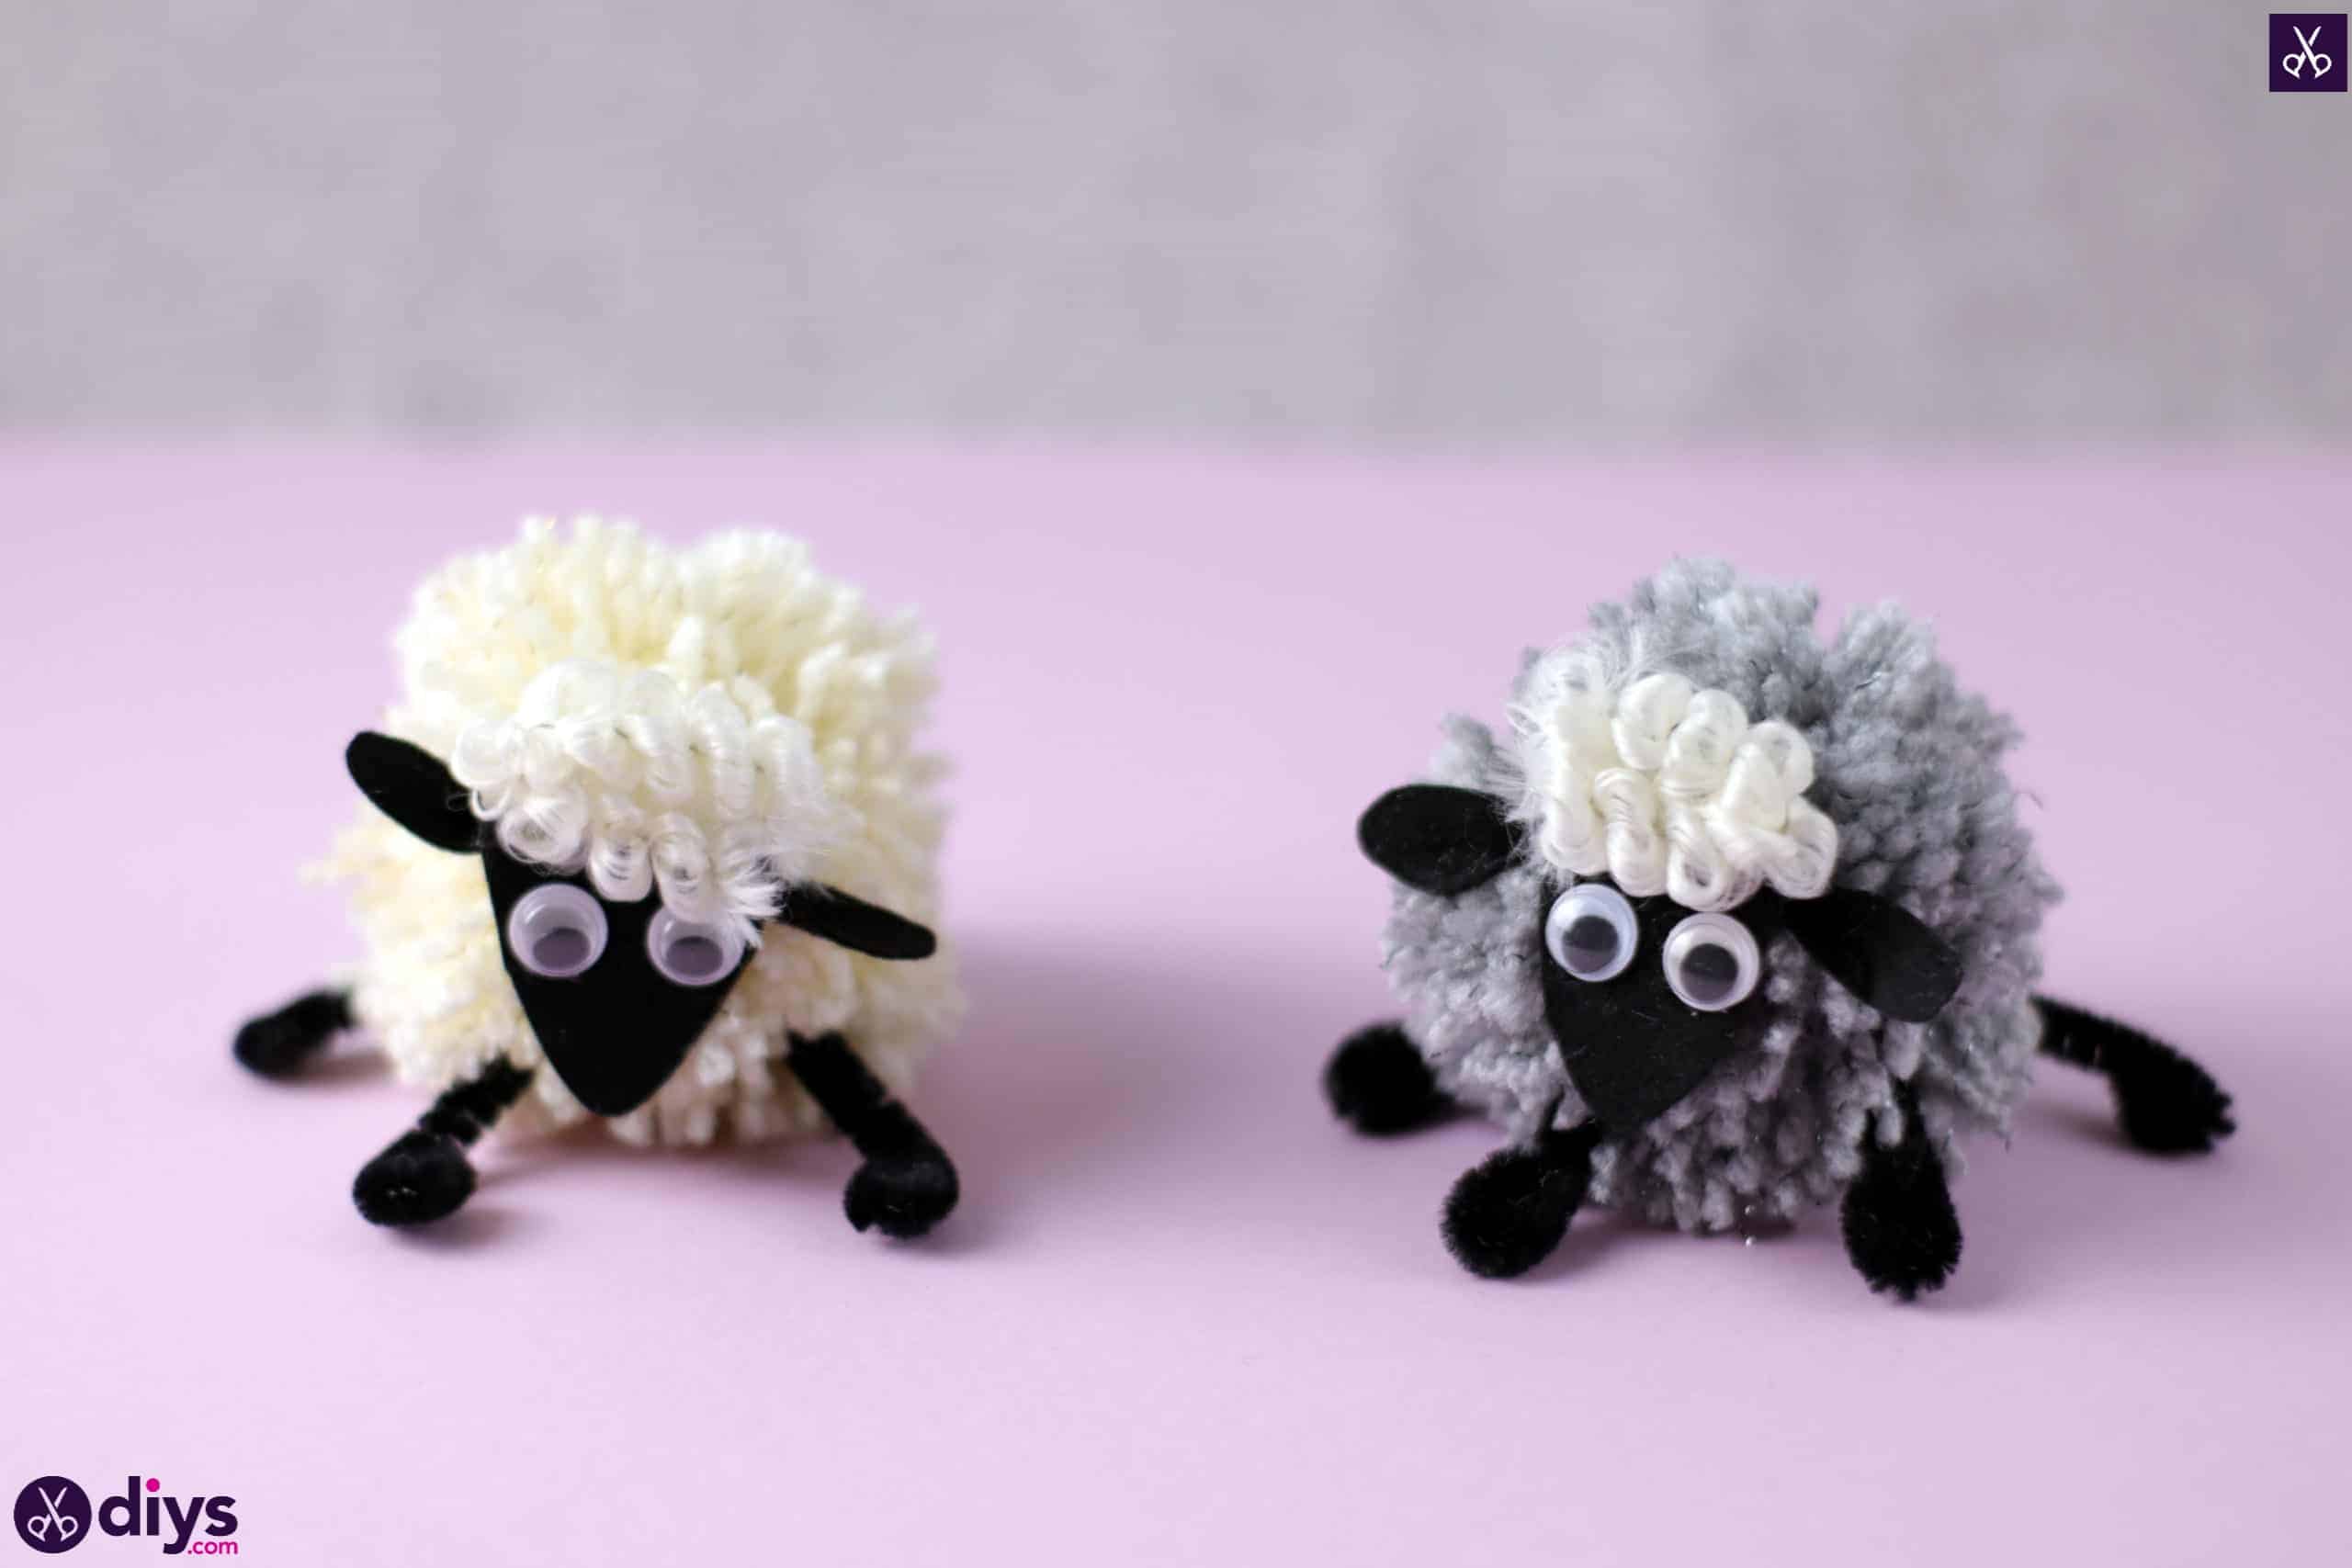 Diy funny pom pom sheep for kids craft